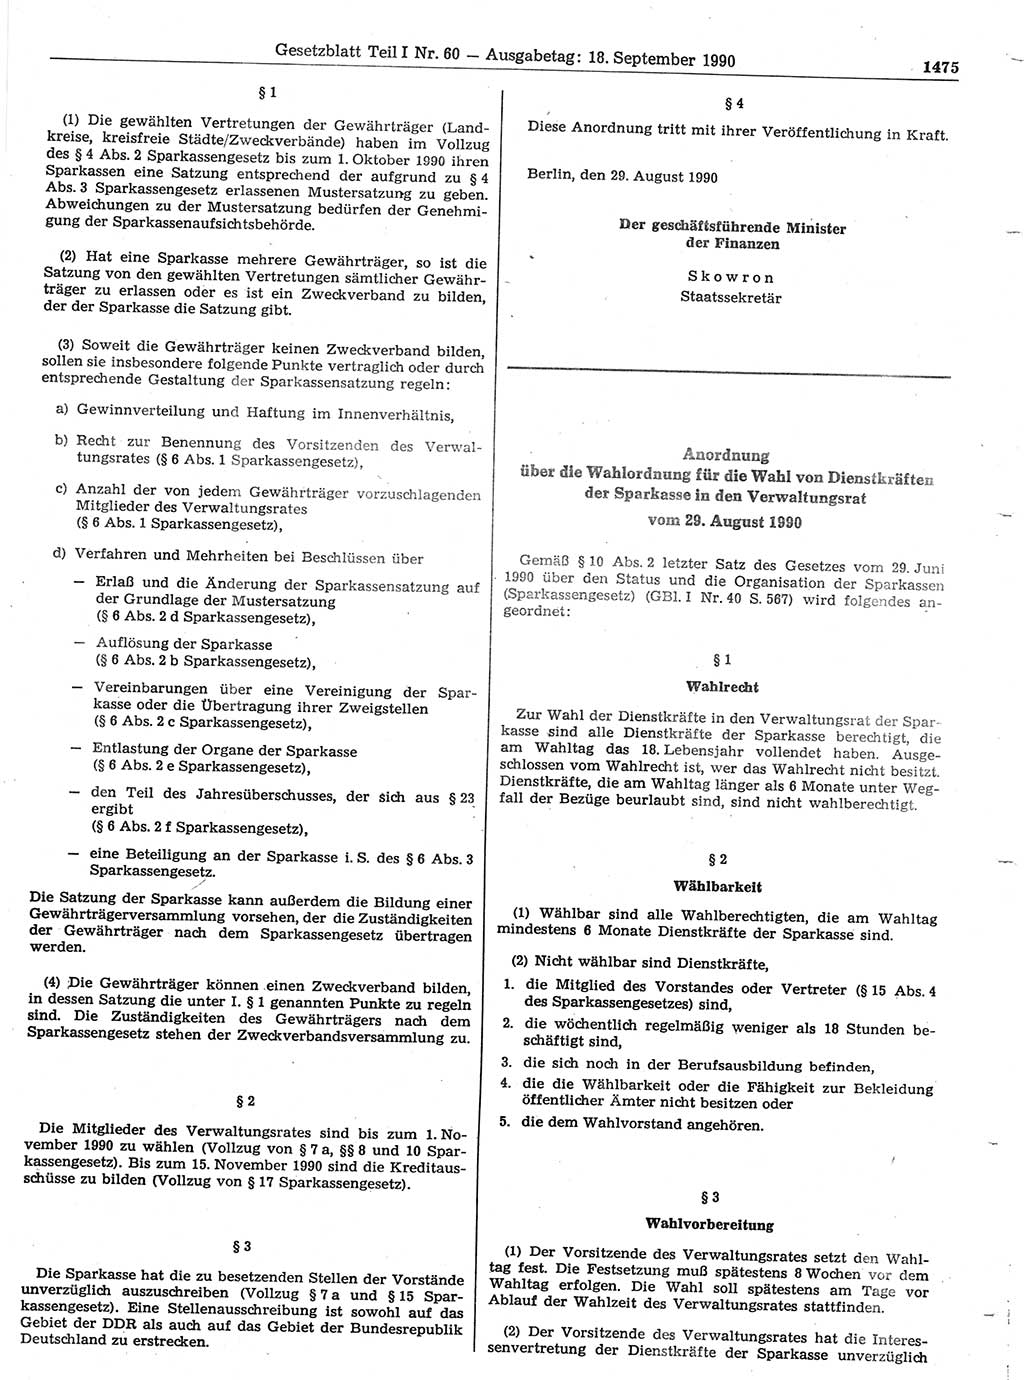 Gesetzblatt (GBl.) der Deutschen Demokratischen Republik (DDR) Teil Ⅰ 1990, Seite 1475 (GBl. DDR Ⅰ 1990, S. 1475)